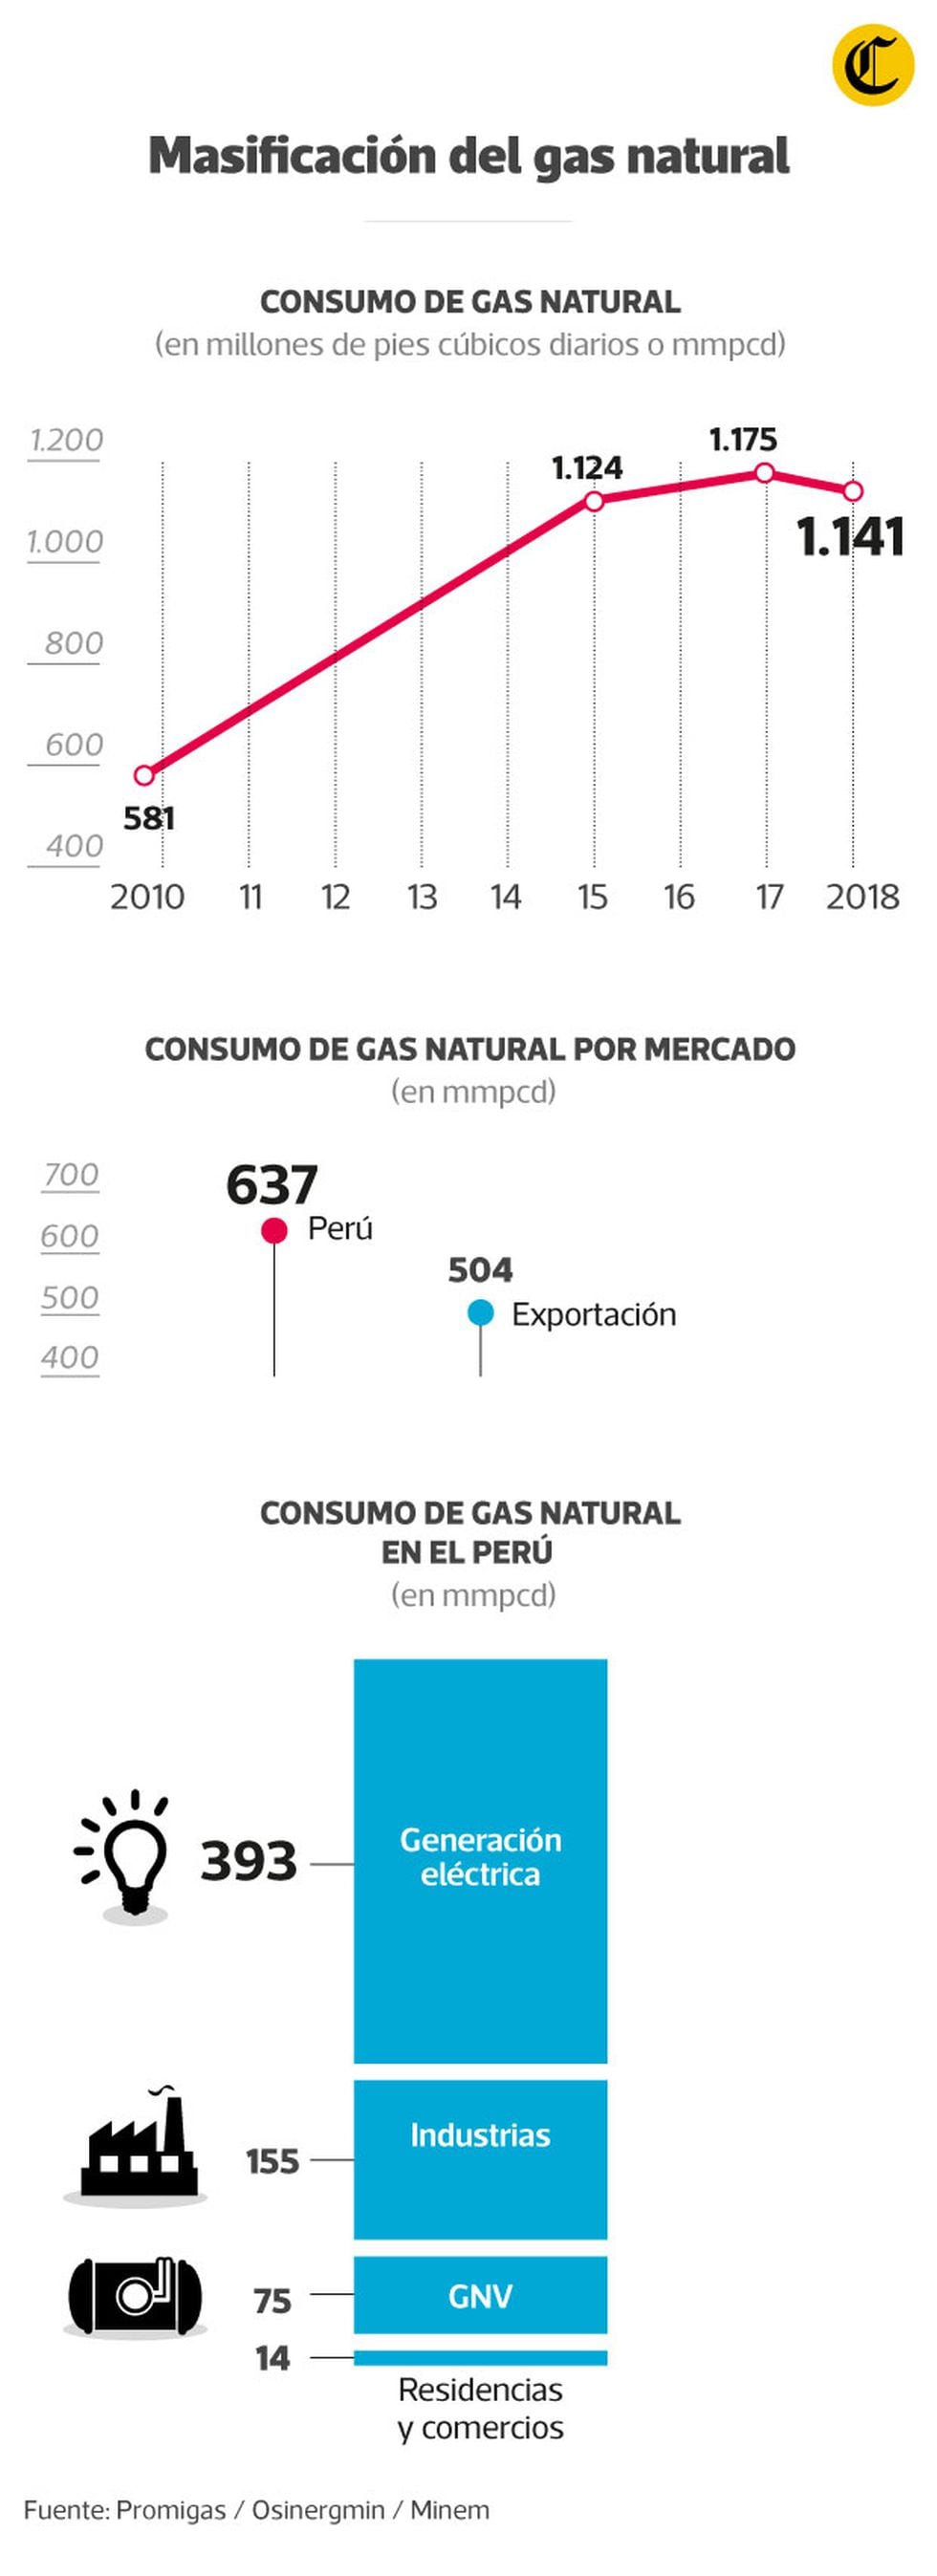 El mayor consumo de gas natural ocurre en las industrias, por lo que no es un negocio para las empresas. De allí el involucramiento del gobierno.